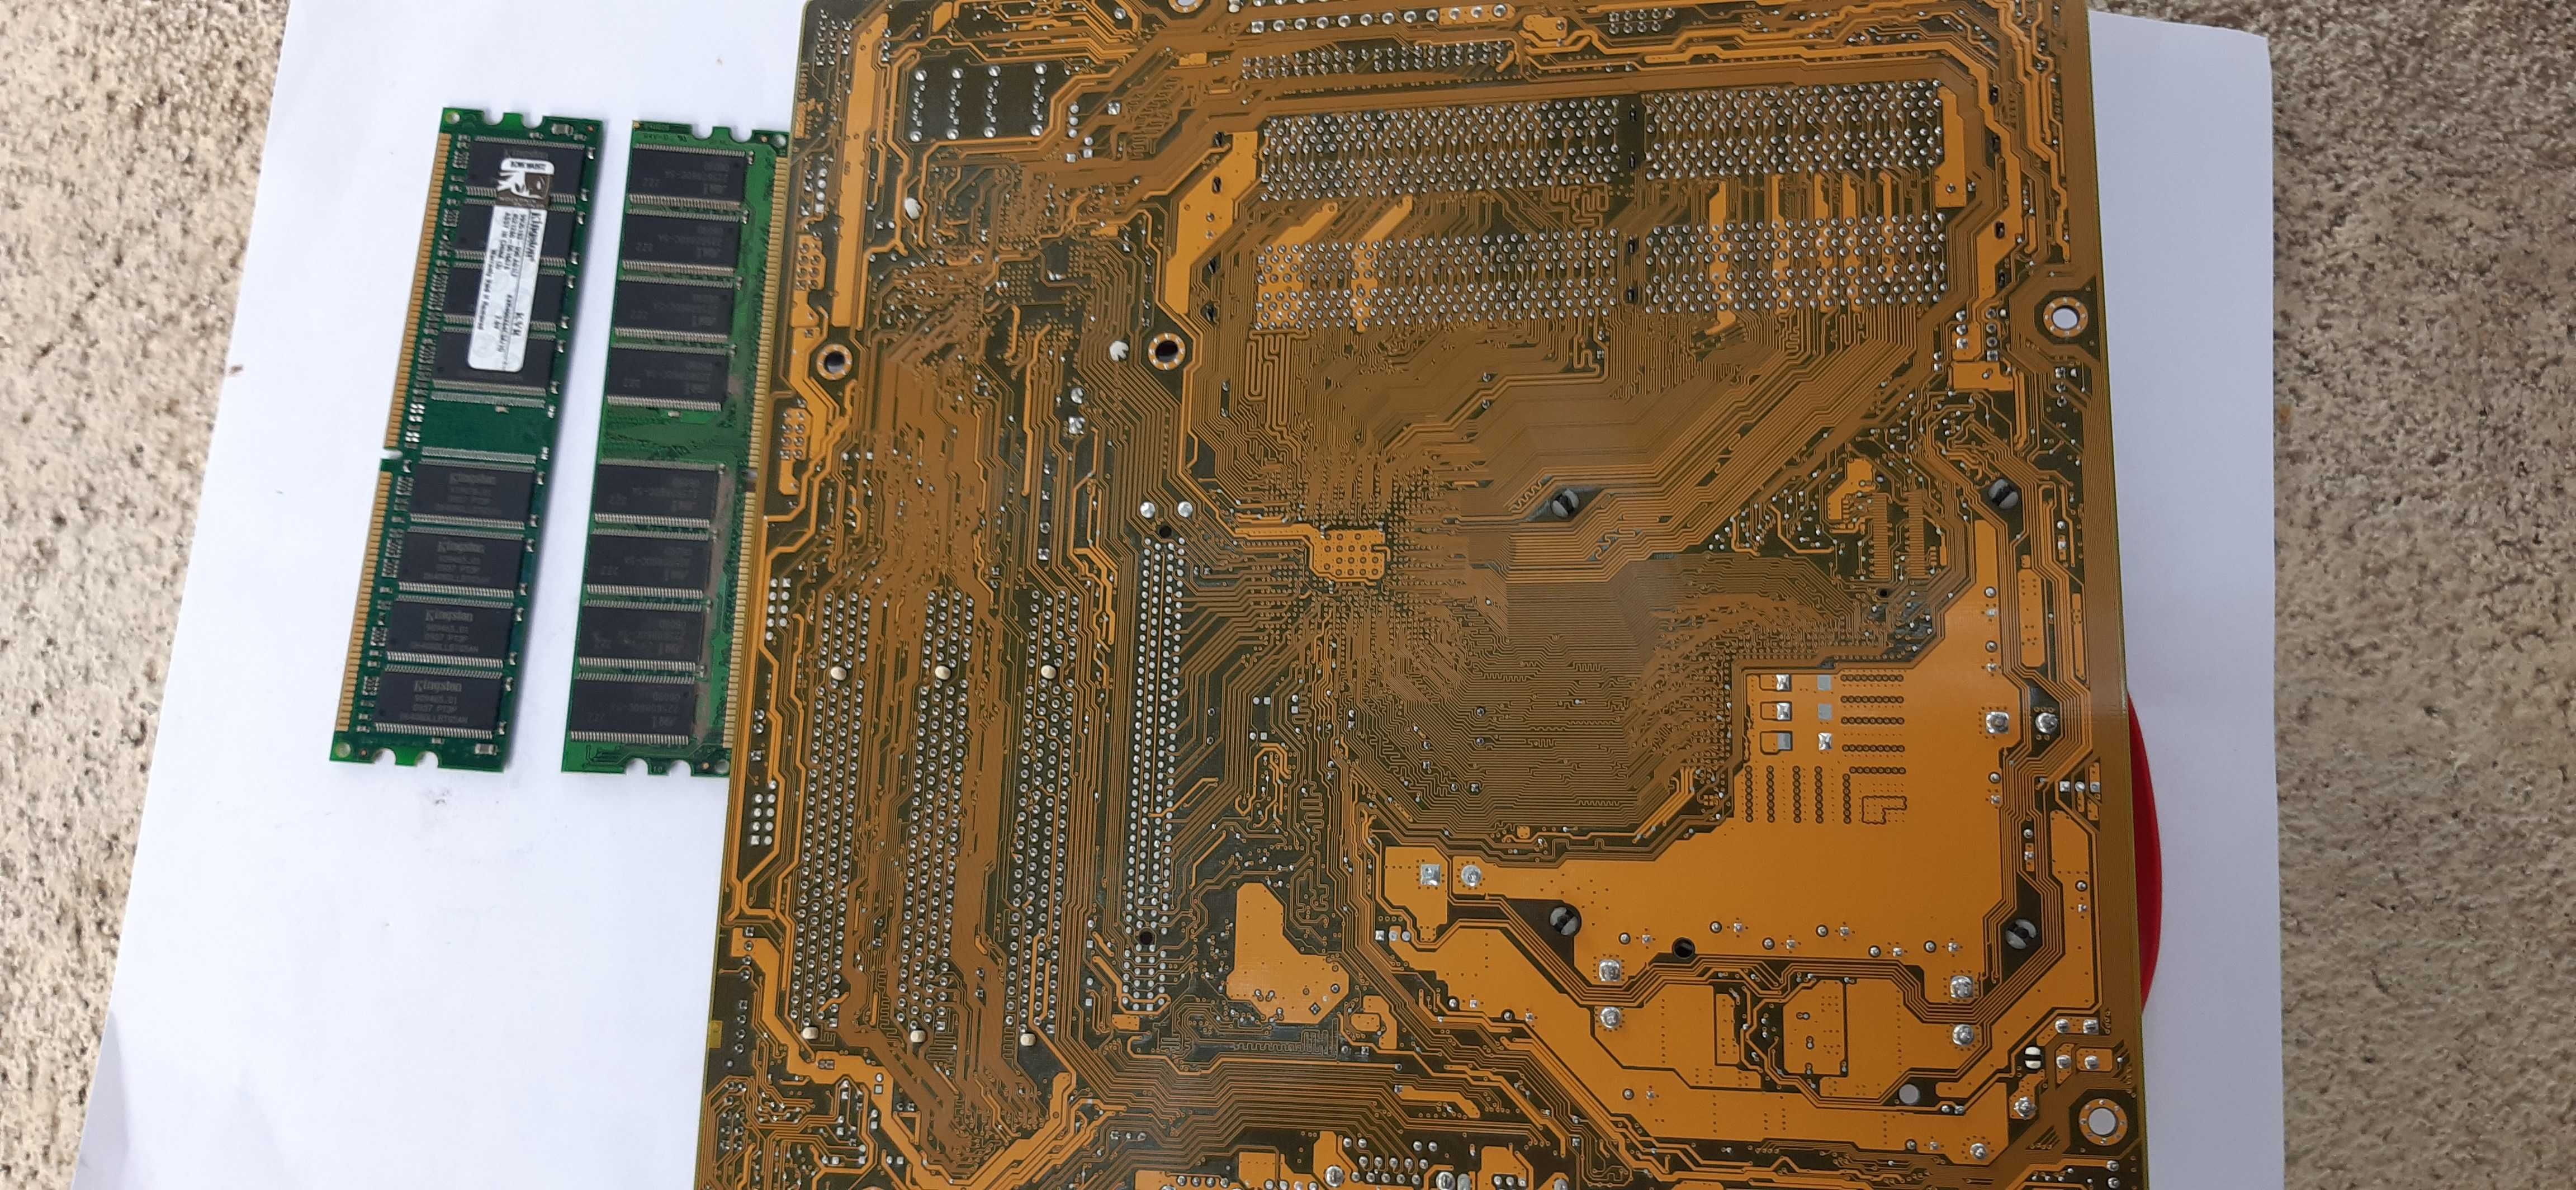 Kit placa skt.775, procesor Pentium 630 la 3.0Ghz si 1,5 Gb ram